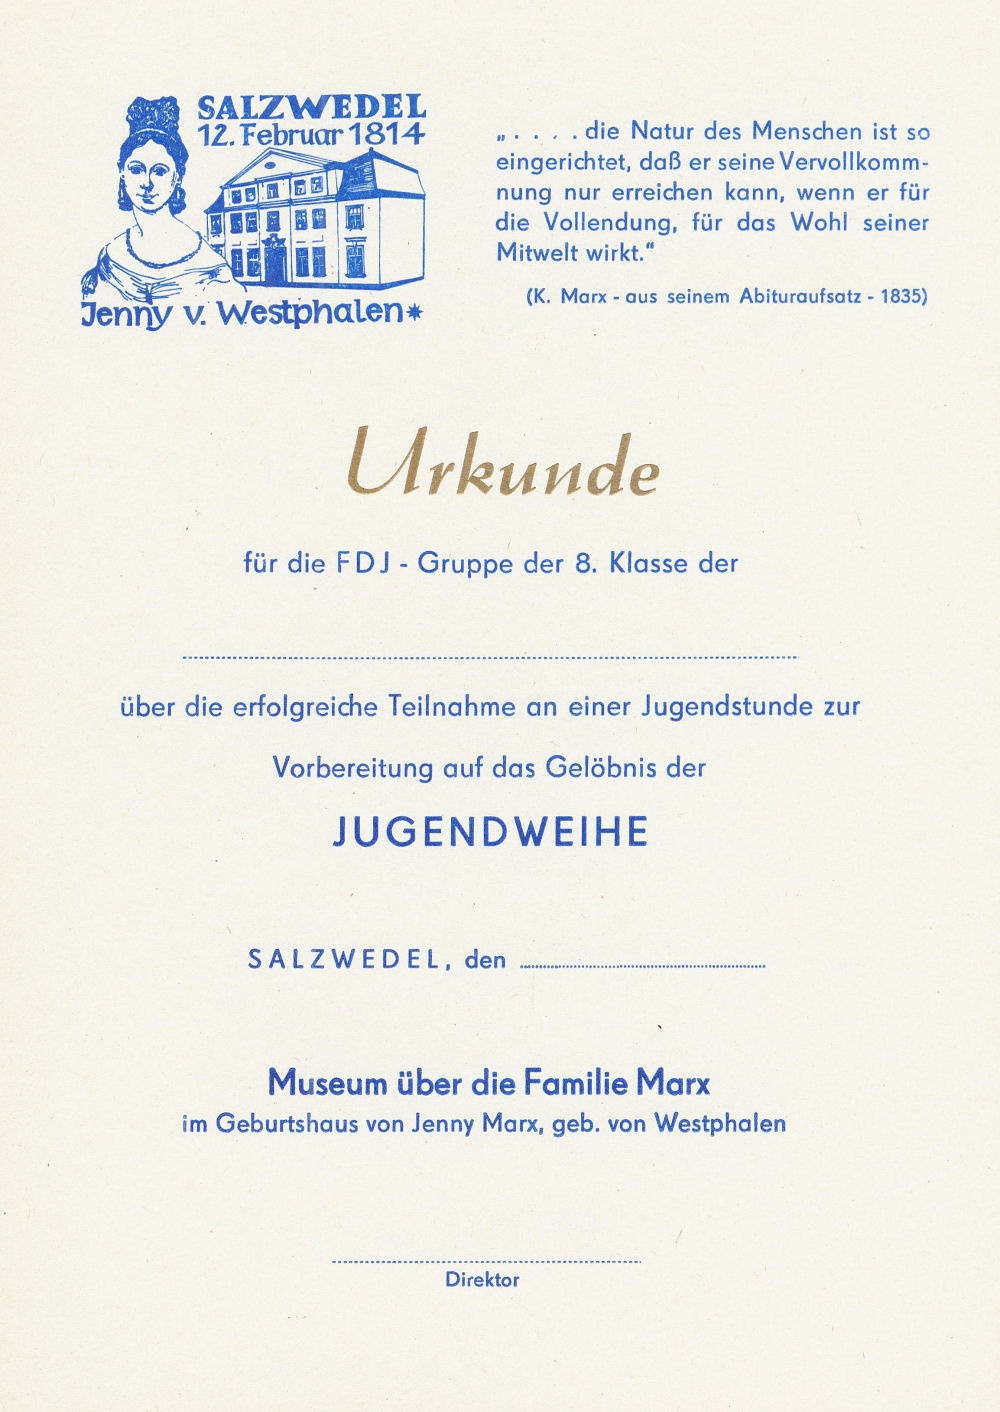 Urkundenvordruck des Museums über die Familie Marx für einen absolvierten Besuch einer Jugendstunde (Johann-Friedrich-Danneil-Museum Salzwedel CC BY-NC-SA)